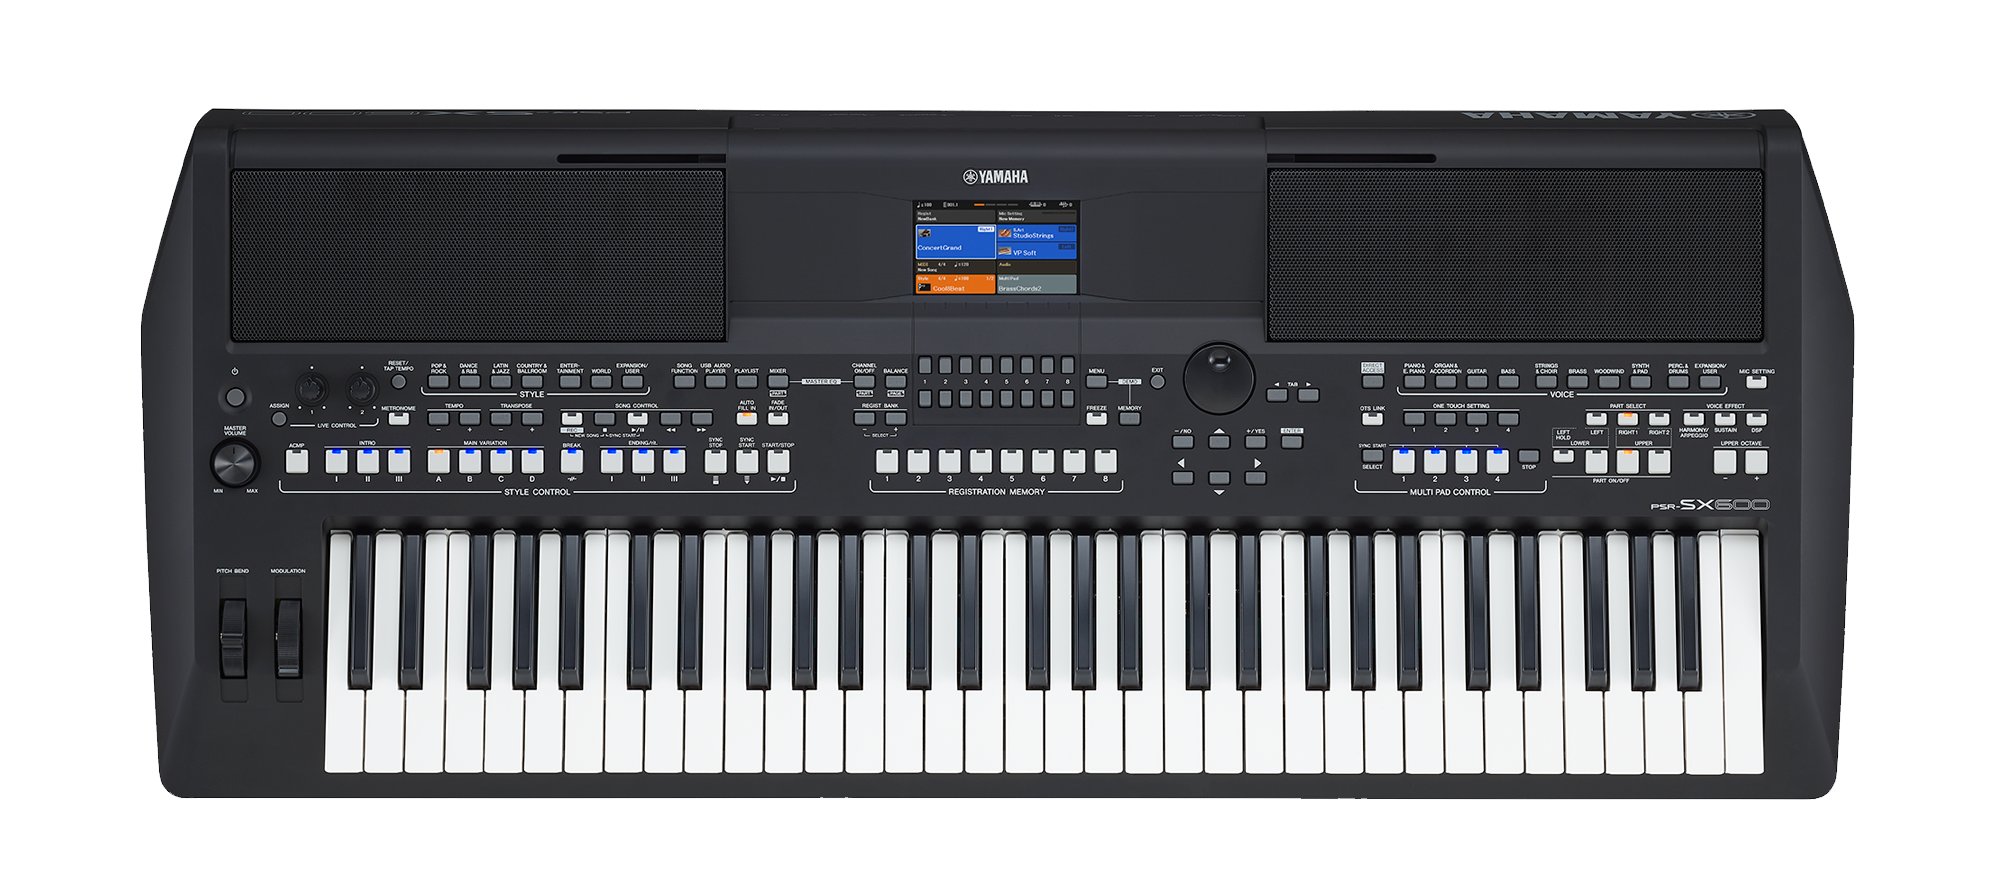 yamaha psr-sx600 digital electronic keyboard piano singapore